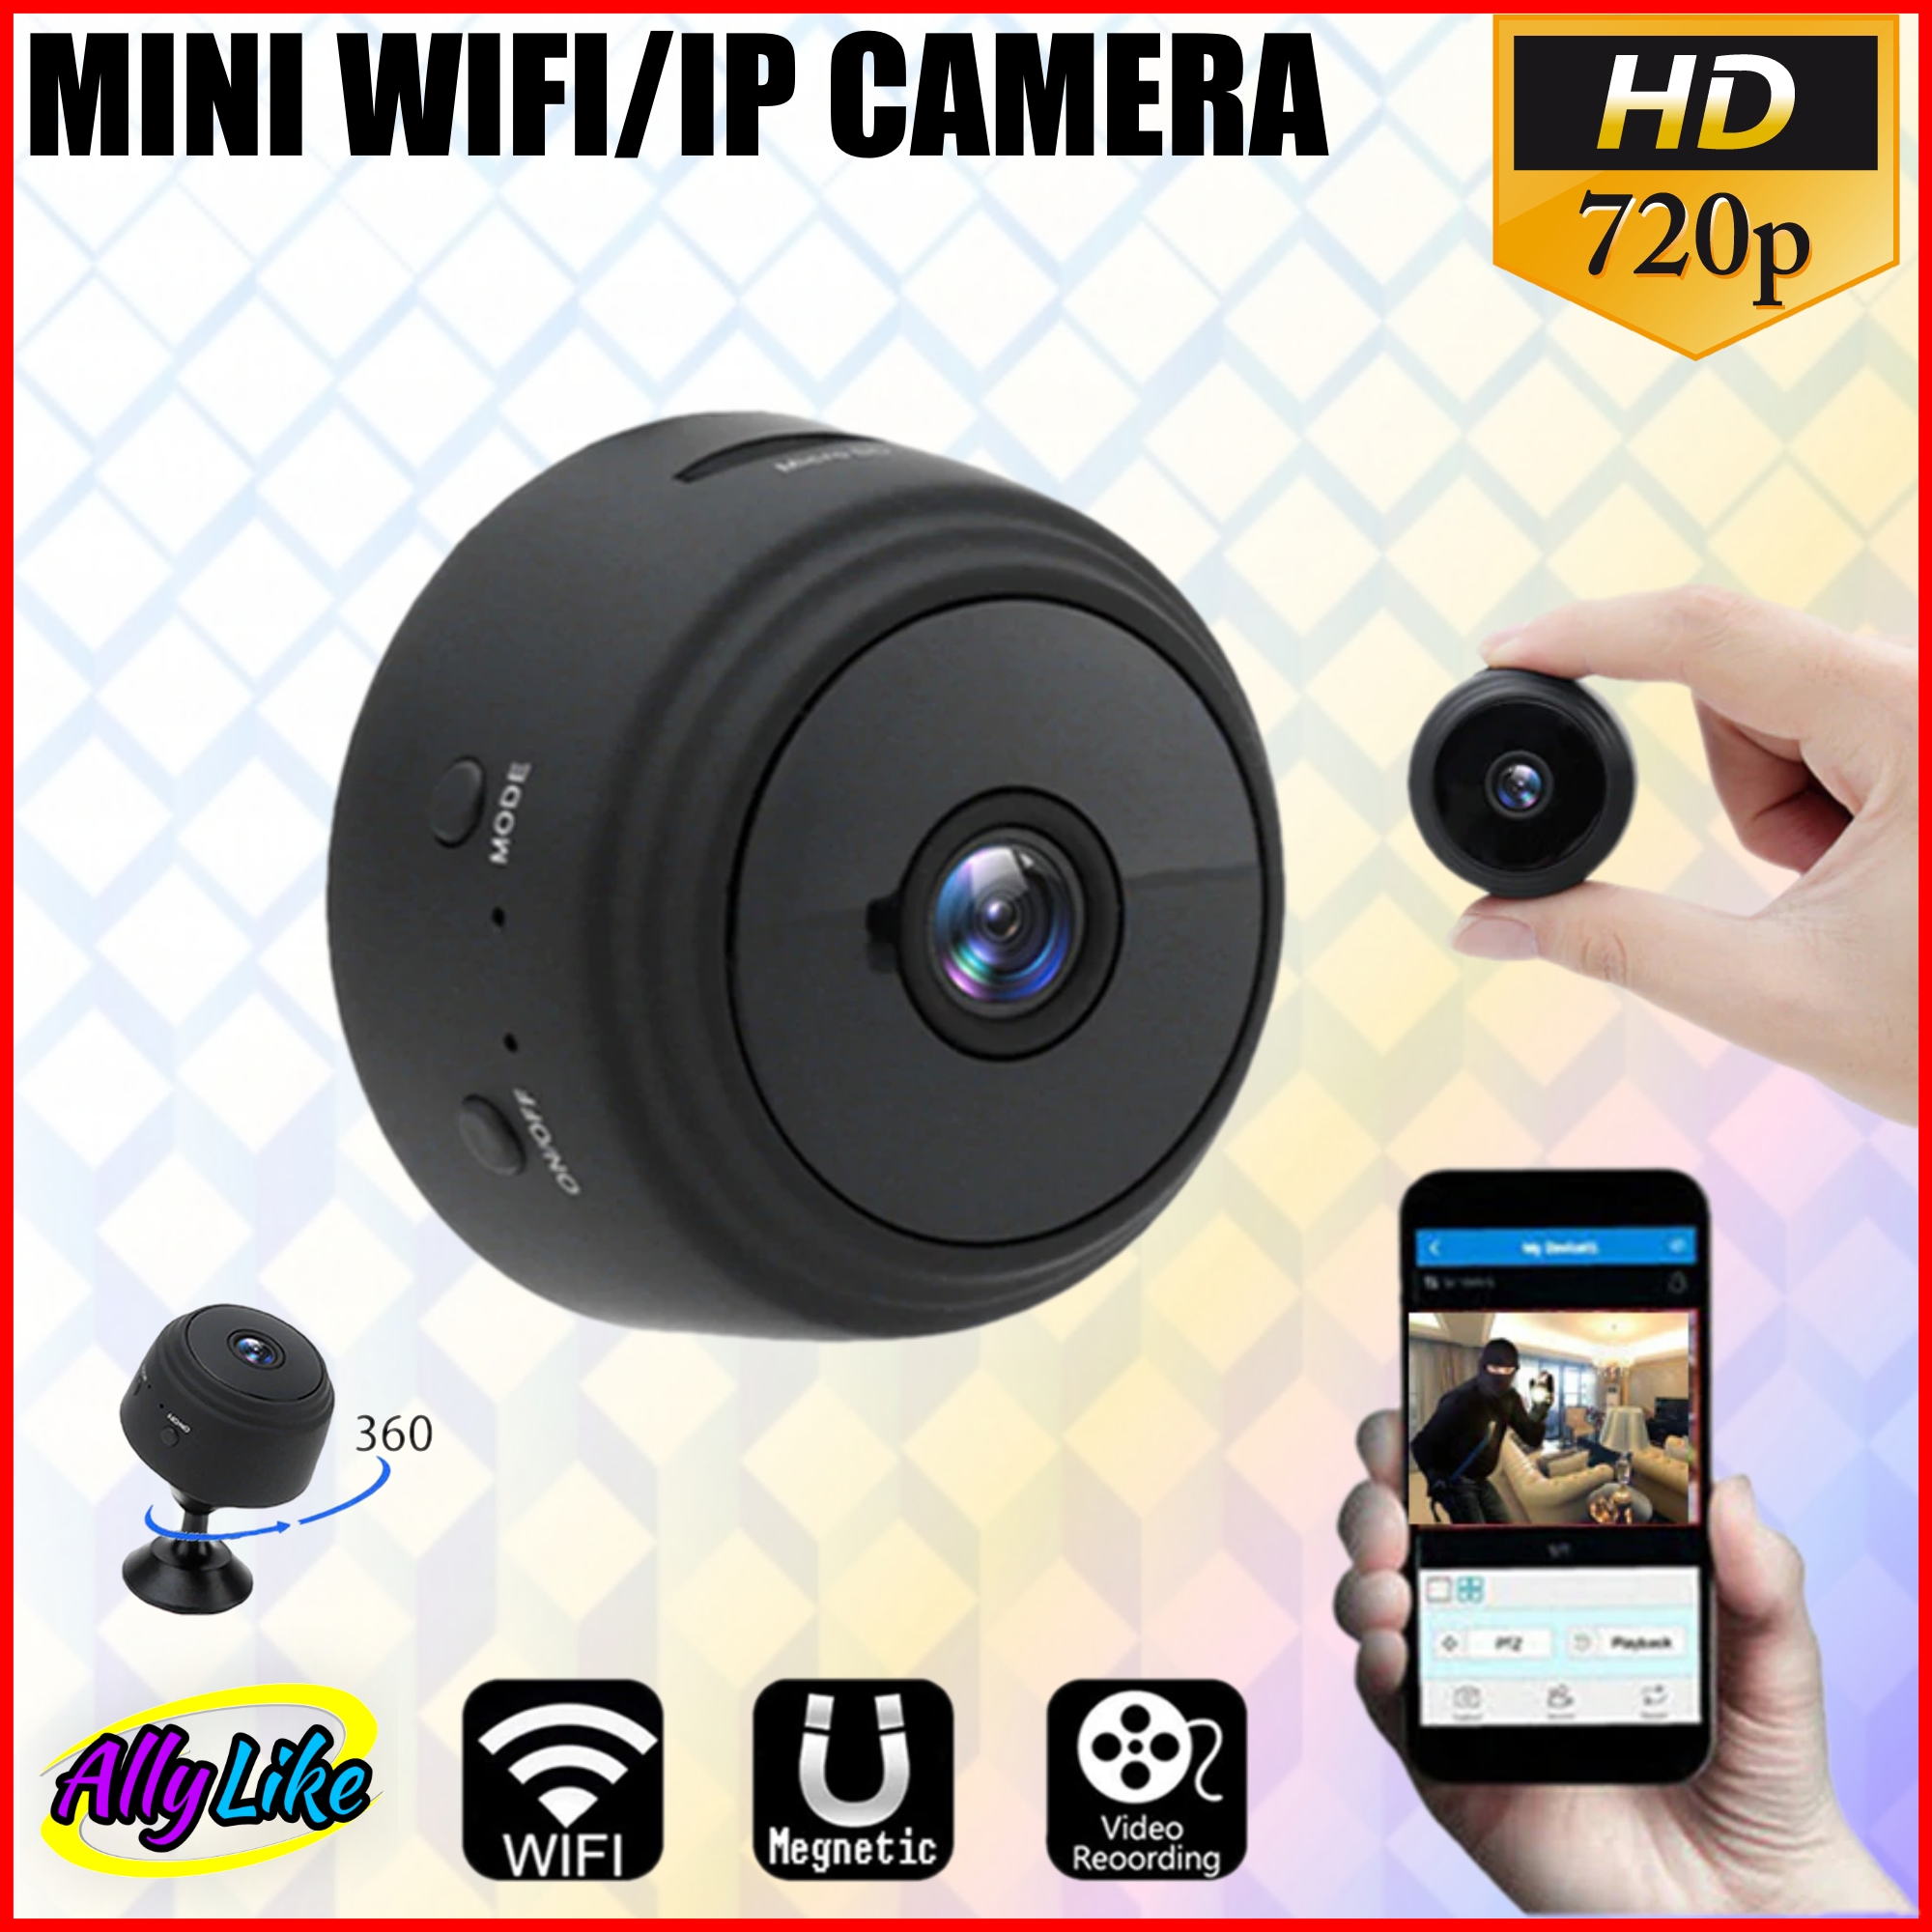 กล้องจิ๋ว wifi hidden ip camera กล้องวงจรปิด ขนาดเล็ก บันทึก video วีดีโอ เสียง cam mini full hd dv 720p spy สายลับ ซ่อนกล้อง ถ่ายรูป พกพา magnet รุ่นใหม่ a09 ally like 2021